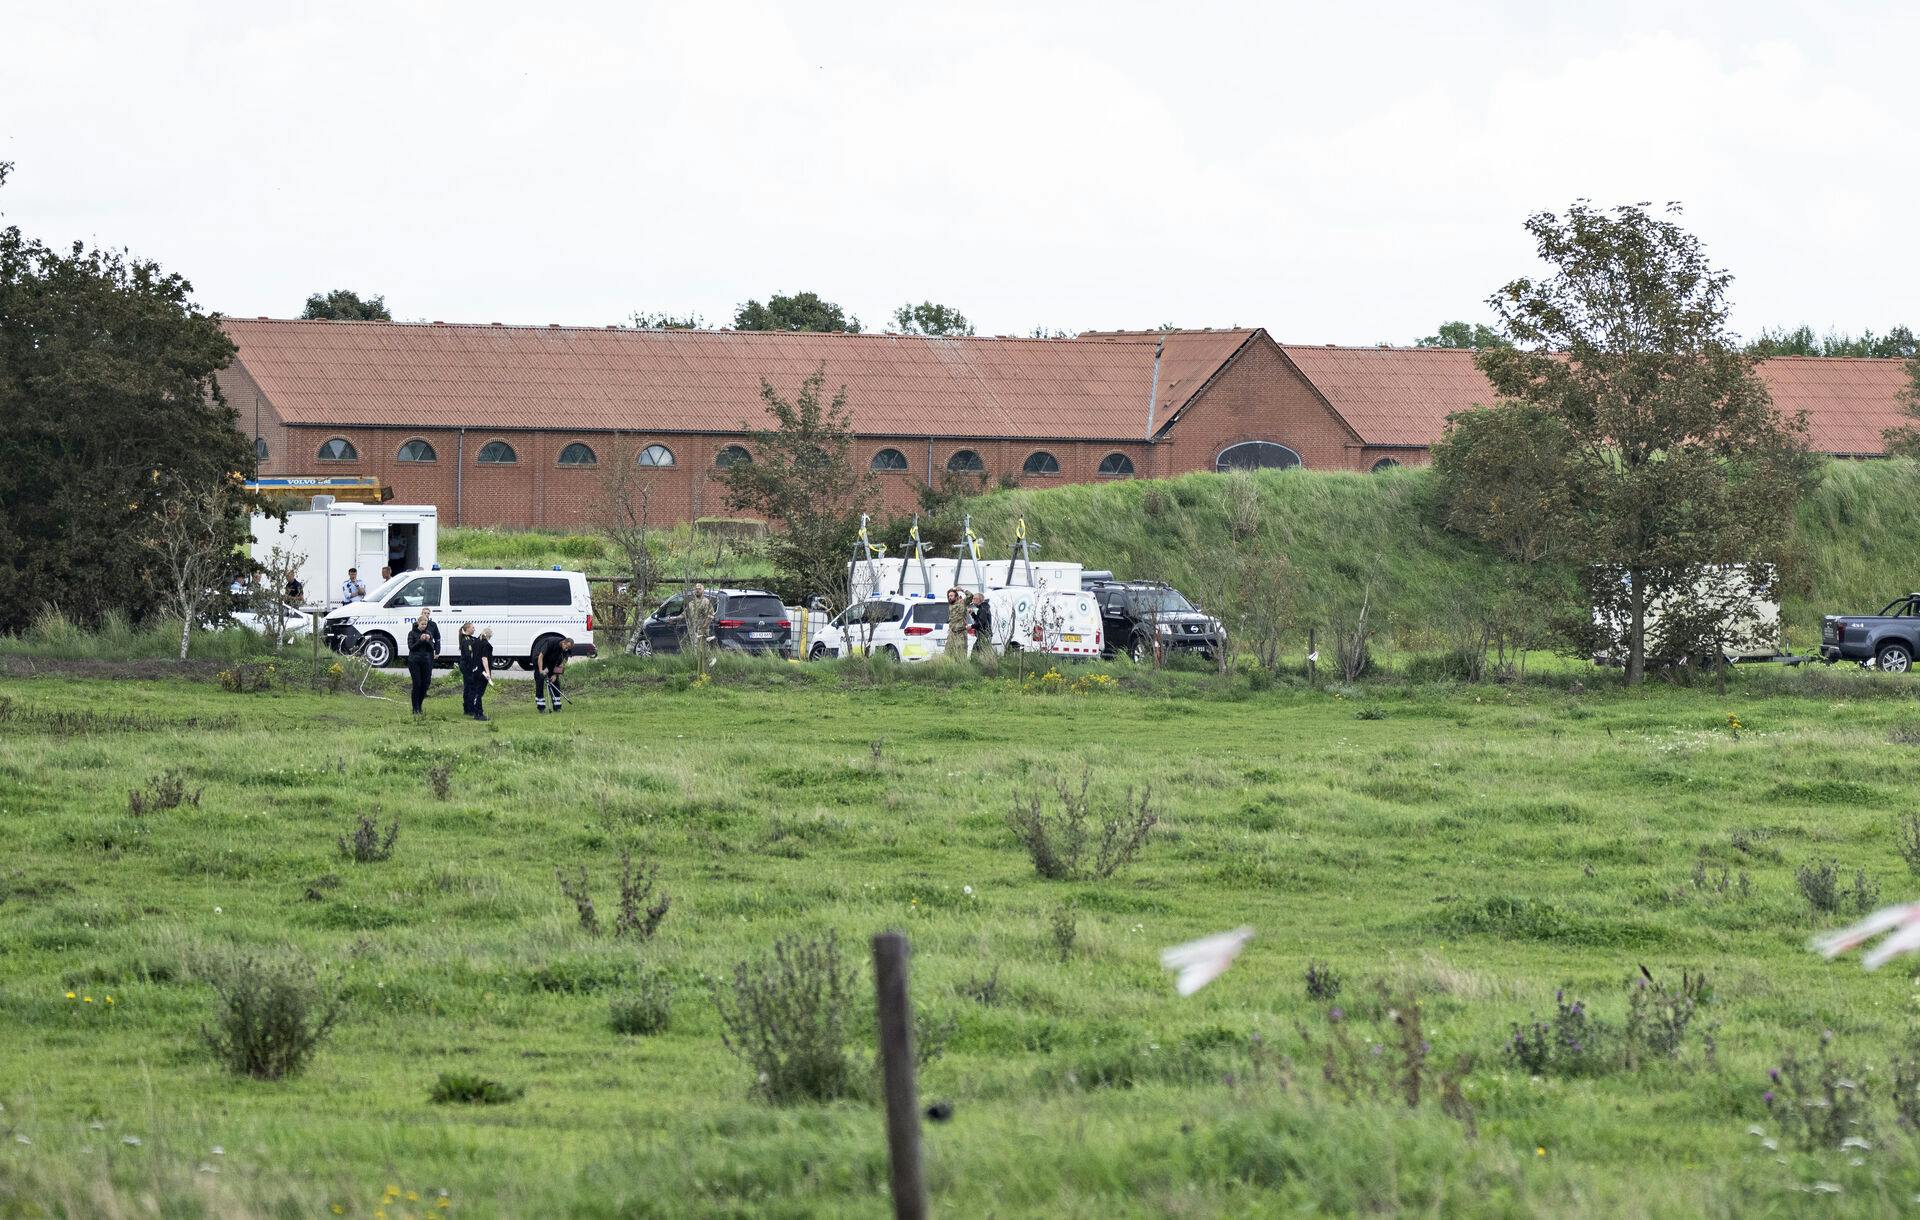 Viegård Stutteri, som har været i fokus blandt andet efter fund af nedgravede heste, er blevet erklæret konkurs.